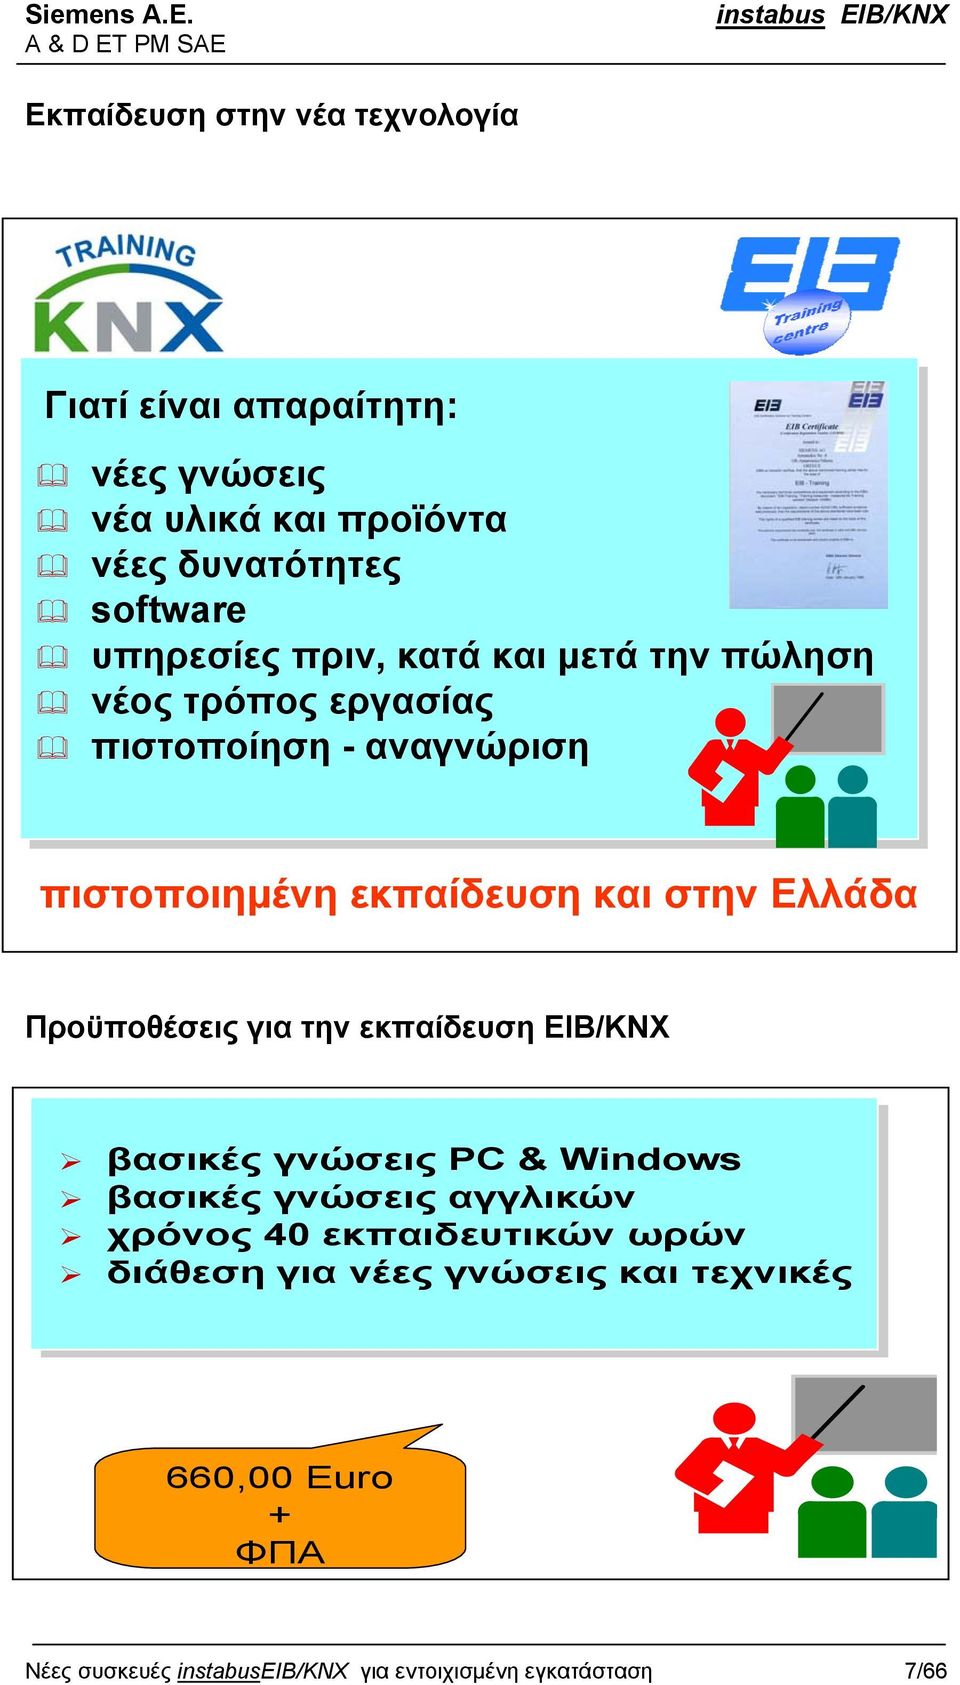 Ελλάδα Προϋποθέσεις για την εκπαίδευση EIB/KNX βασικές γνώσεις PC & Windows βασικές γνώσεις αγγλικών χρόνος 40 εκπαιδευτικών